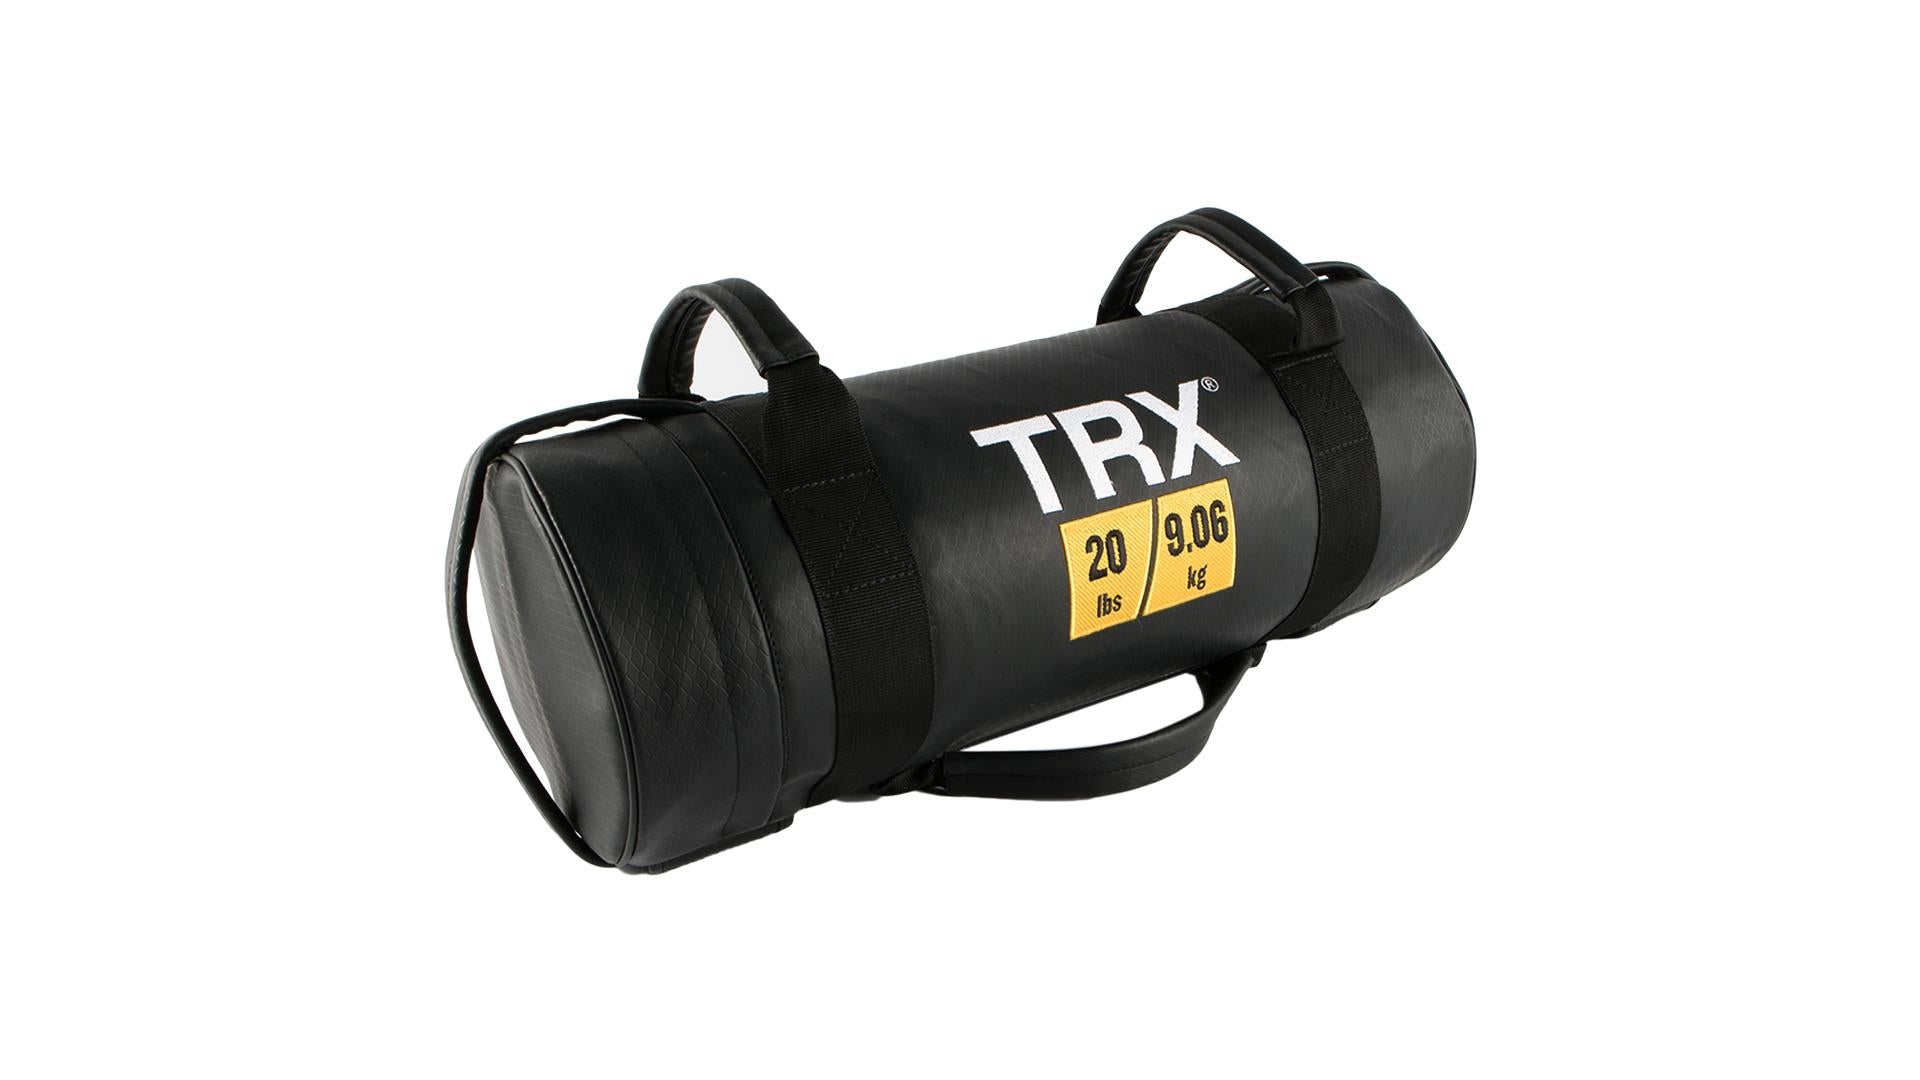 TRX Training Power Bag - 20 lbs